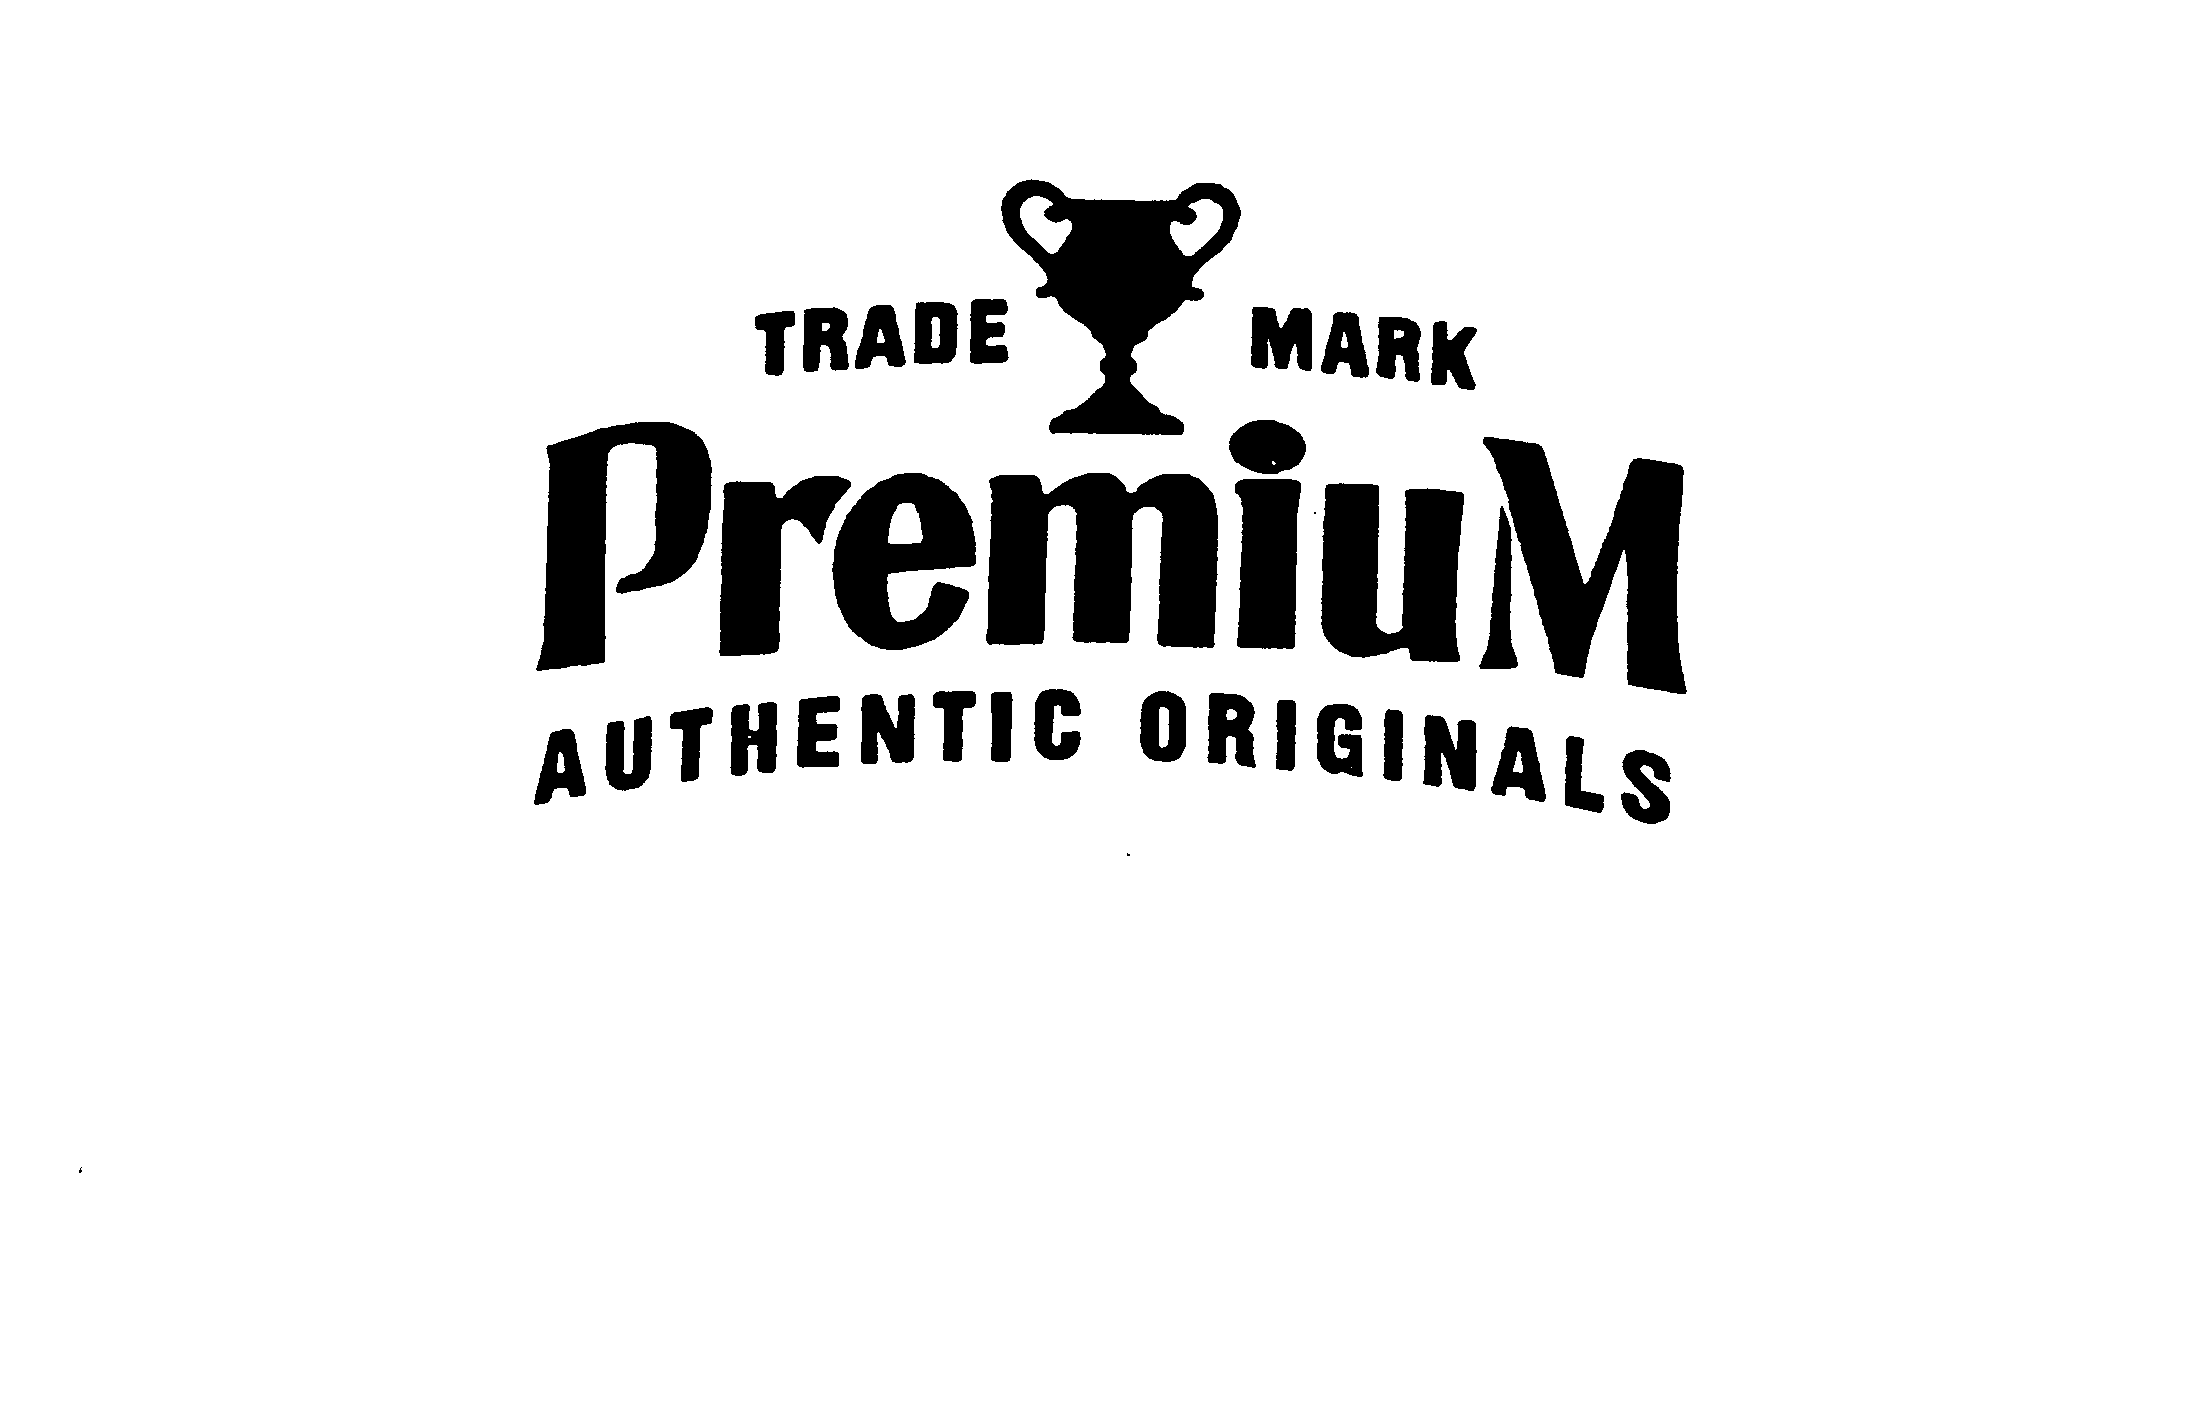  TRADE MARK PREMIUM AUTHENTIC ORIGINALS